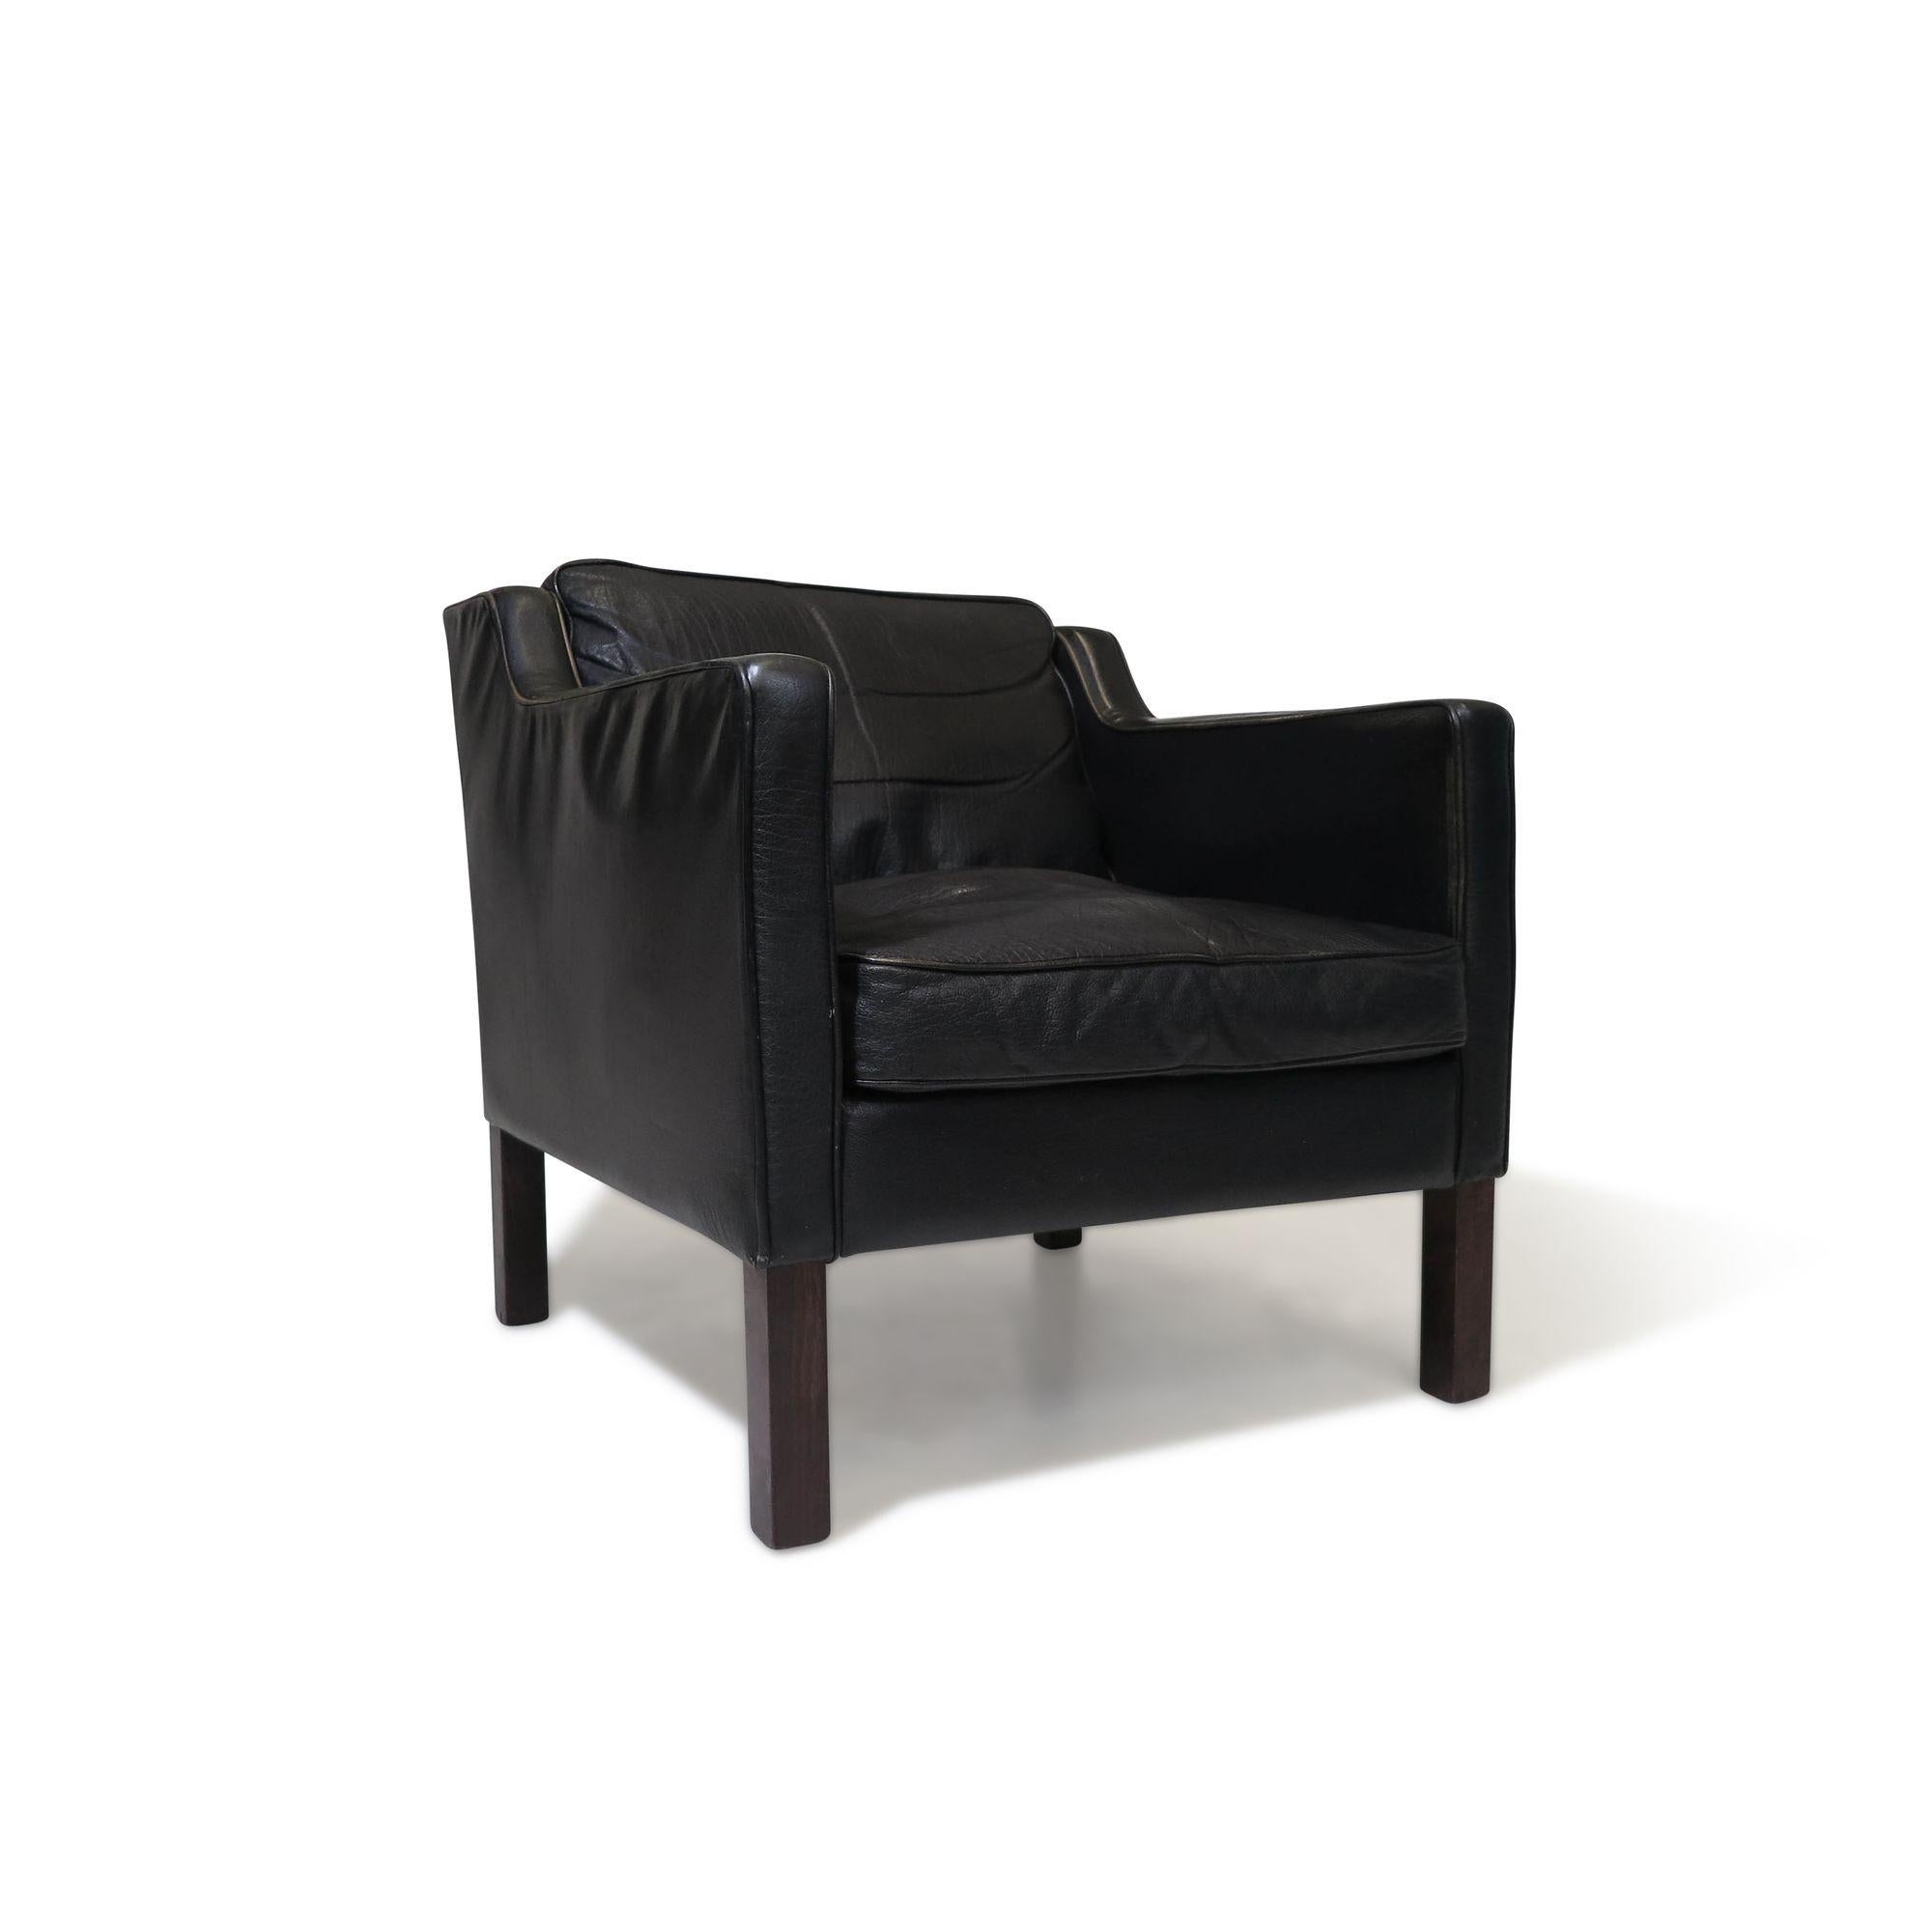 Moderner skandinavischer Loungesessel aus schwarzem Leder im Stil von Borge Mogensen.
Klassische Form in den originalen, daunengefüllten Lederkissen, erhöht auf quadratischen Beinen.
Messungen
B 28'' x T 28'' x H 28''
Sitzhöhe 18''